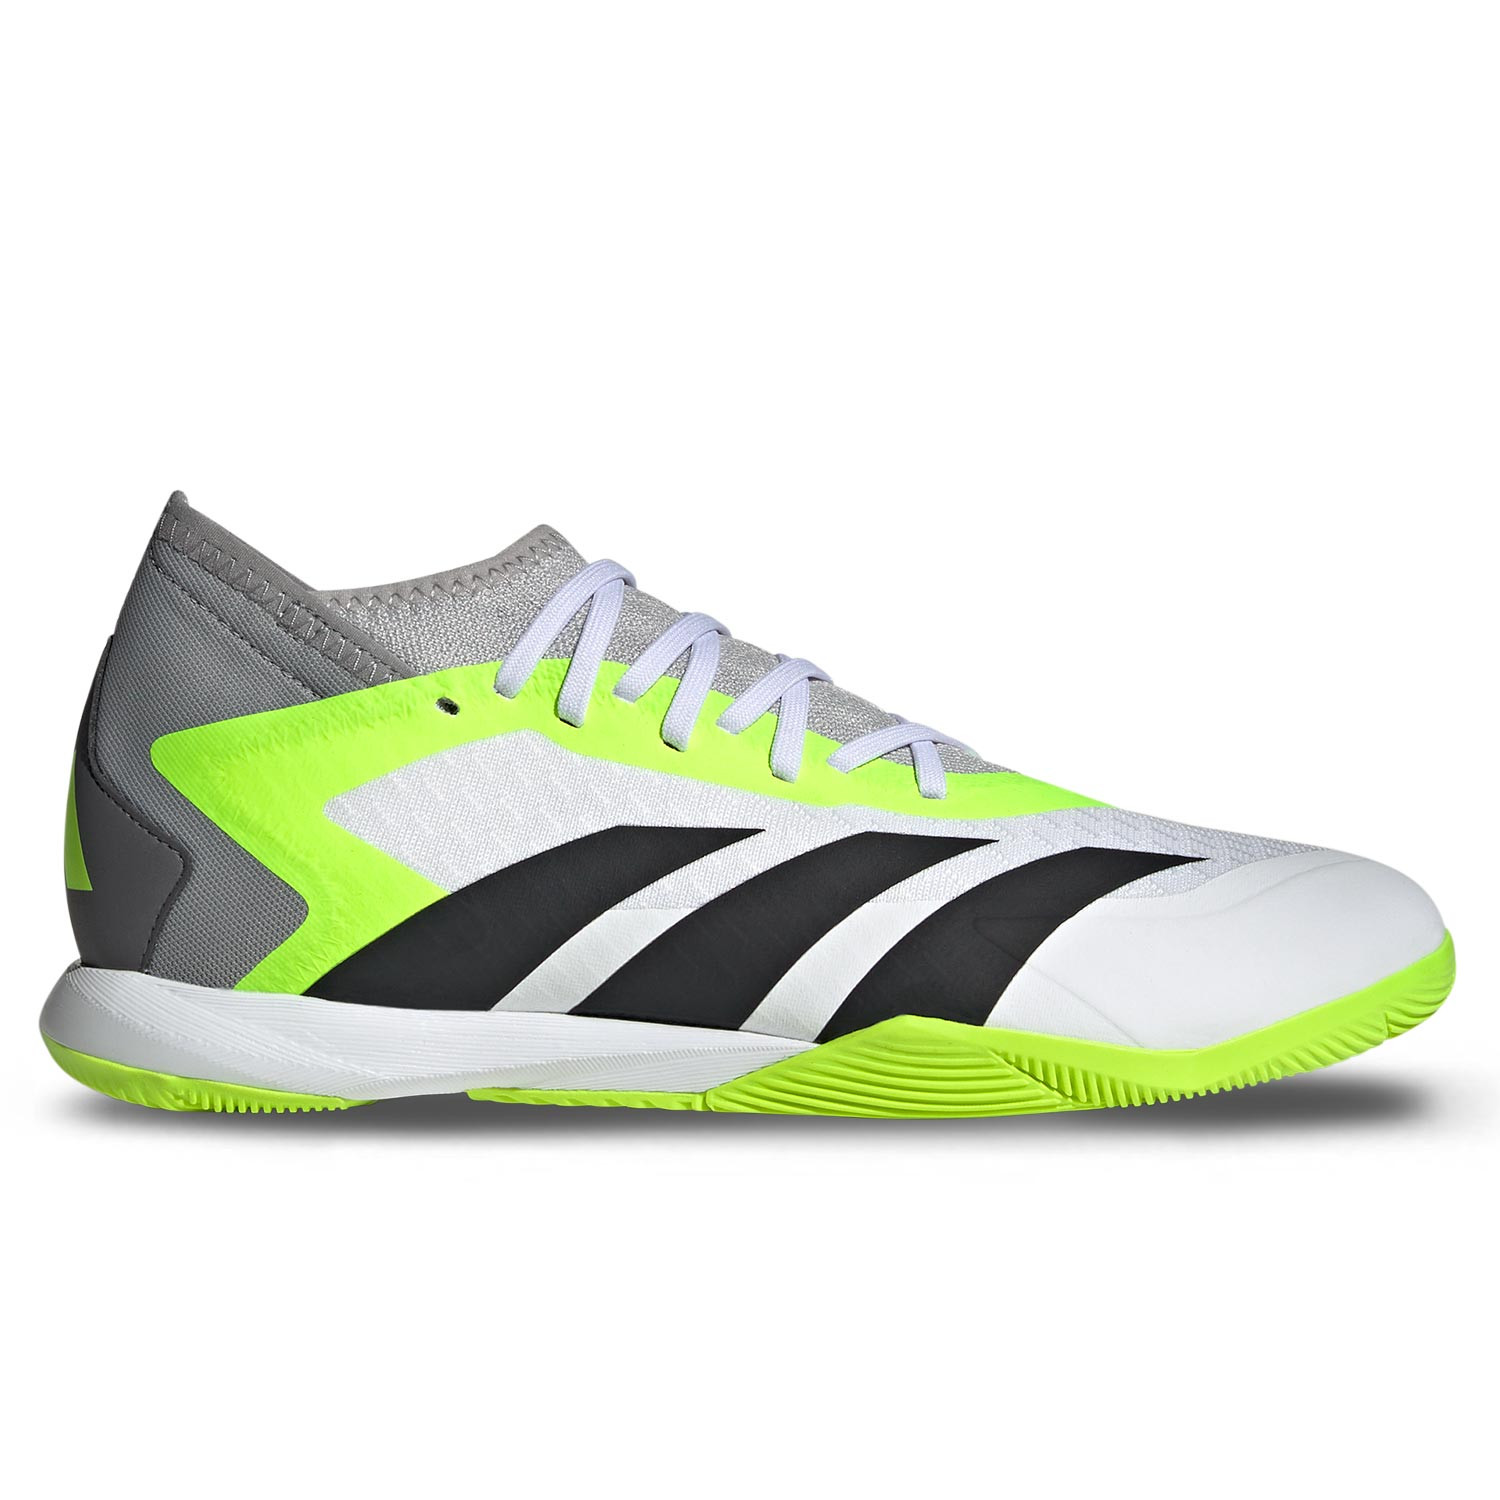 compra zapatilla de futbol Turf Adidas económica on line